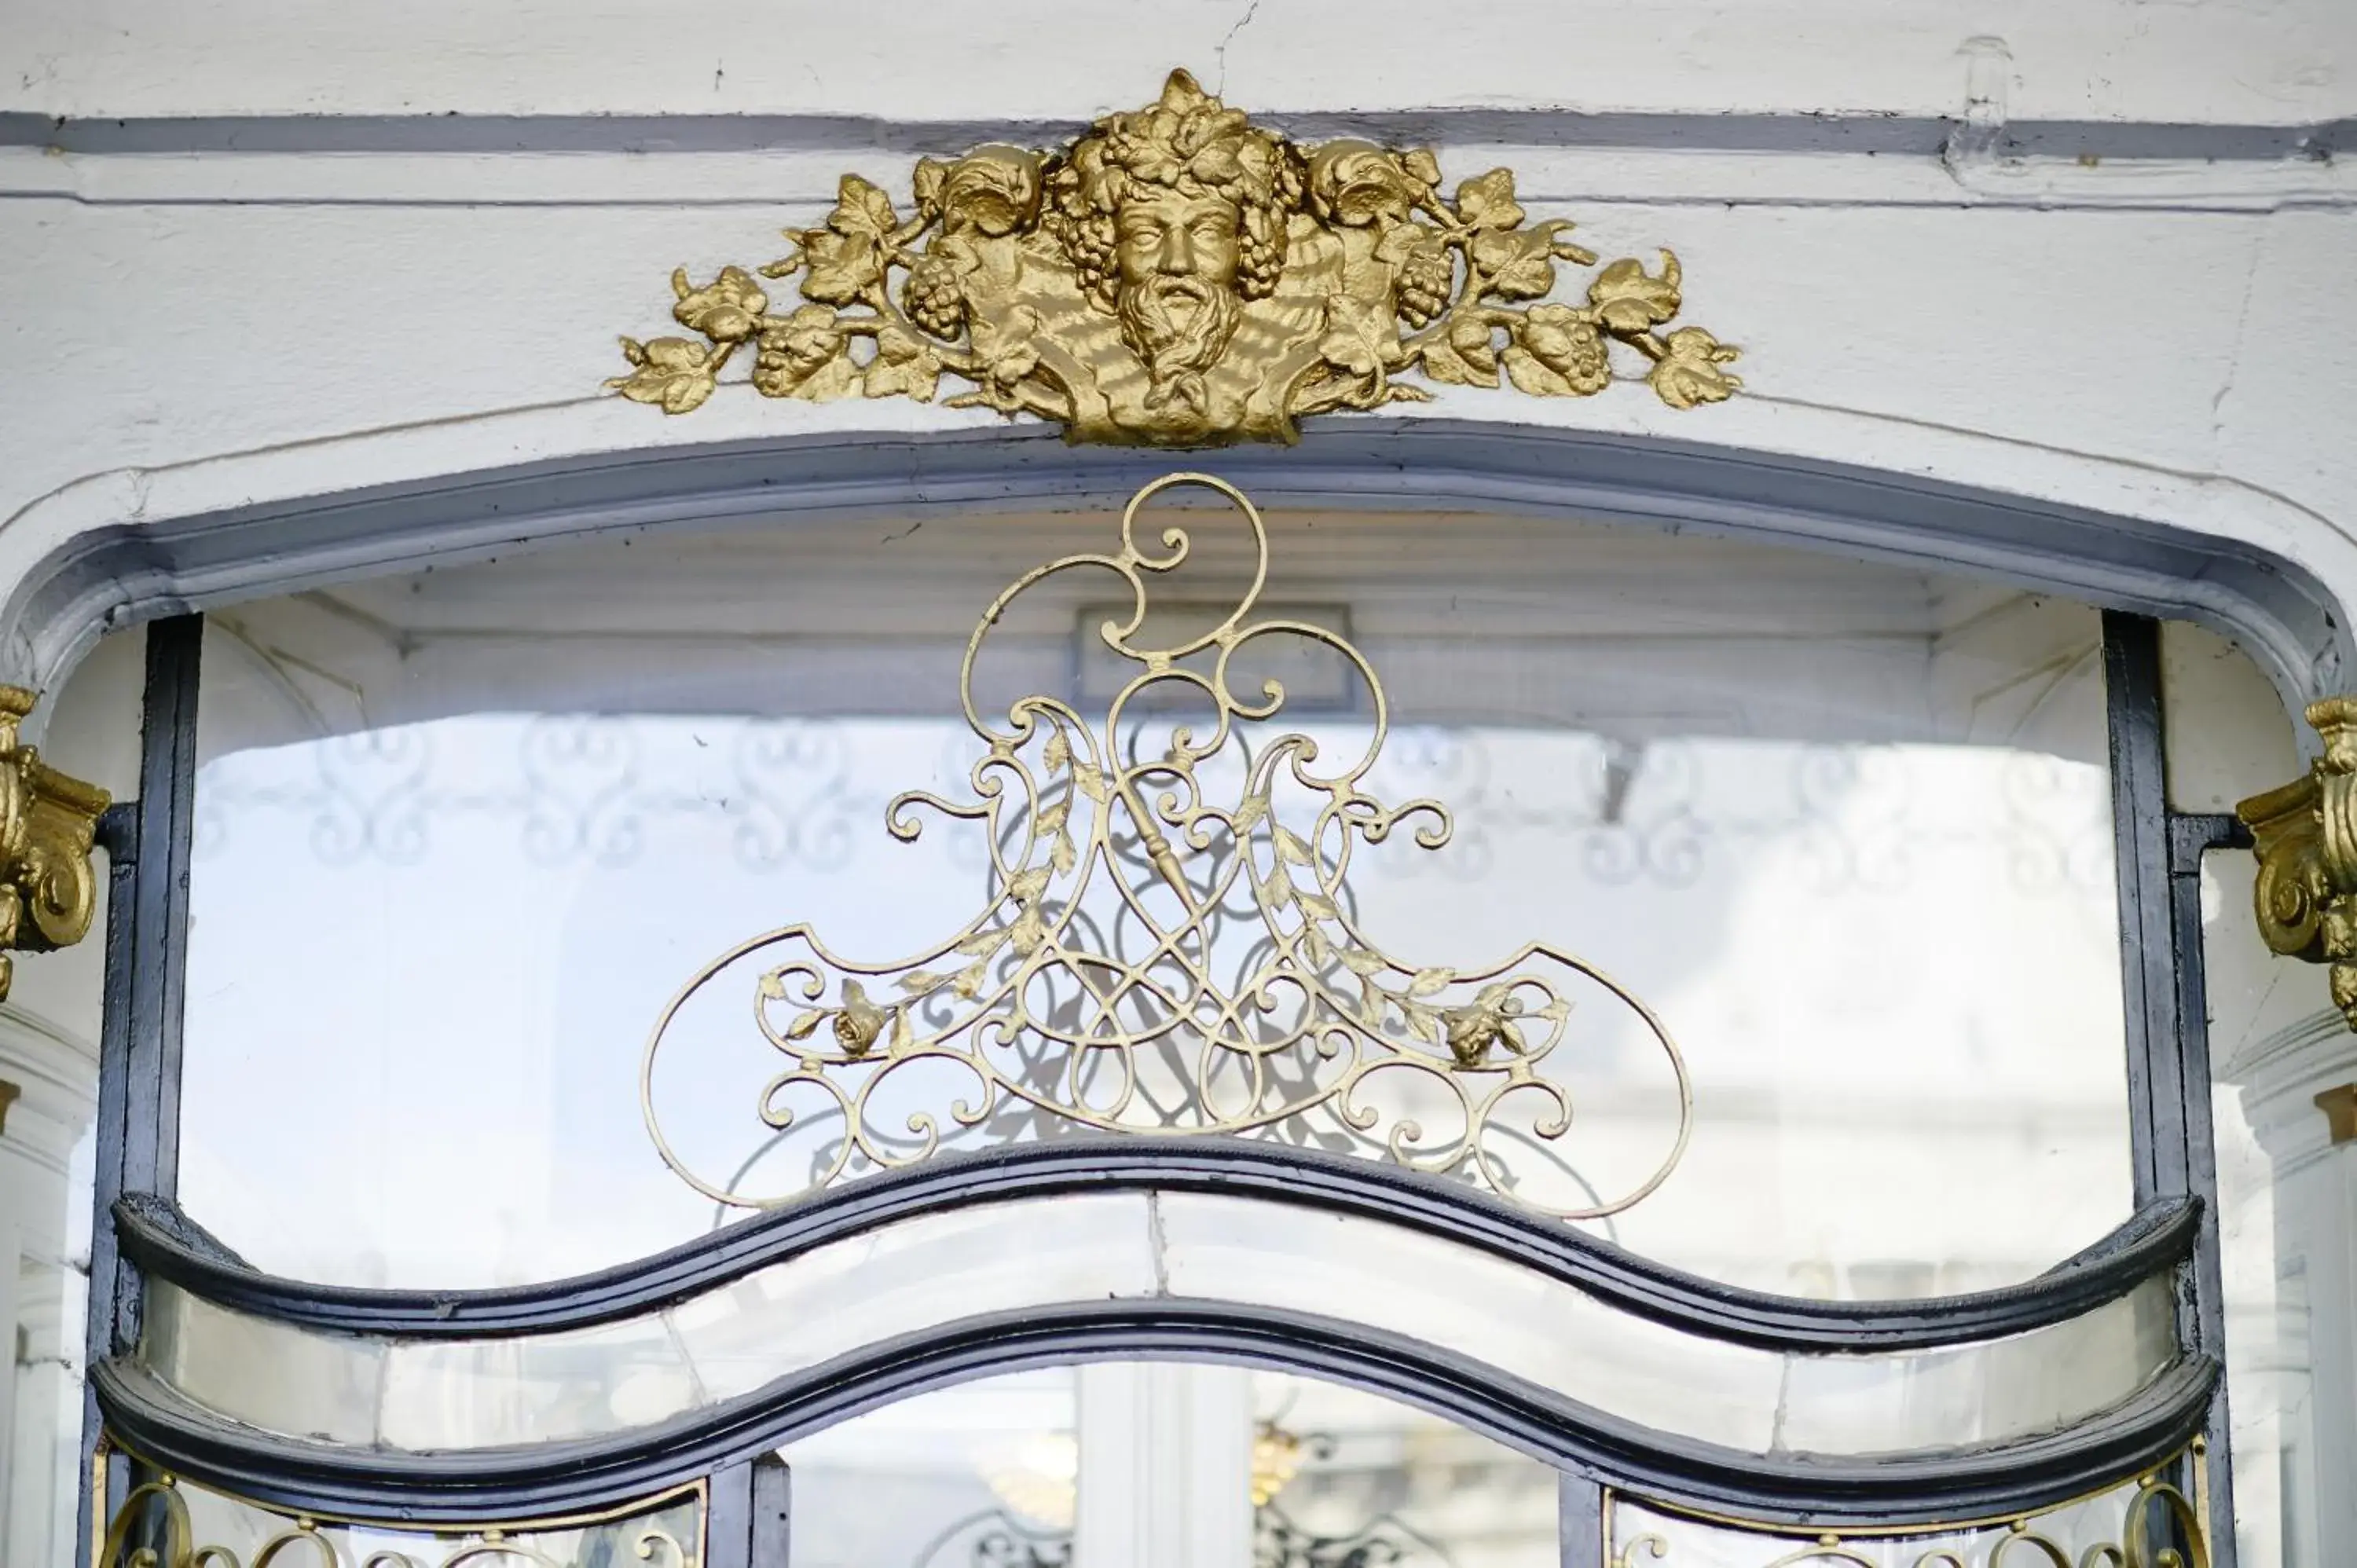 Facade/entrance in Grand Hotel de Flandre